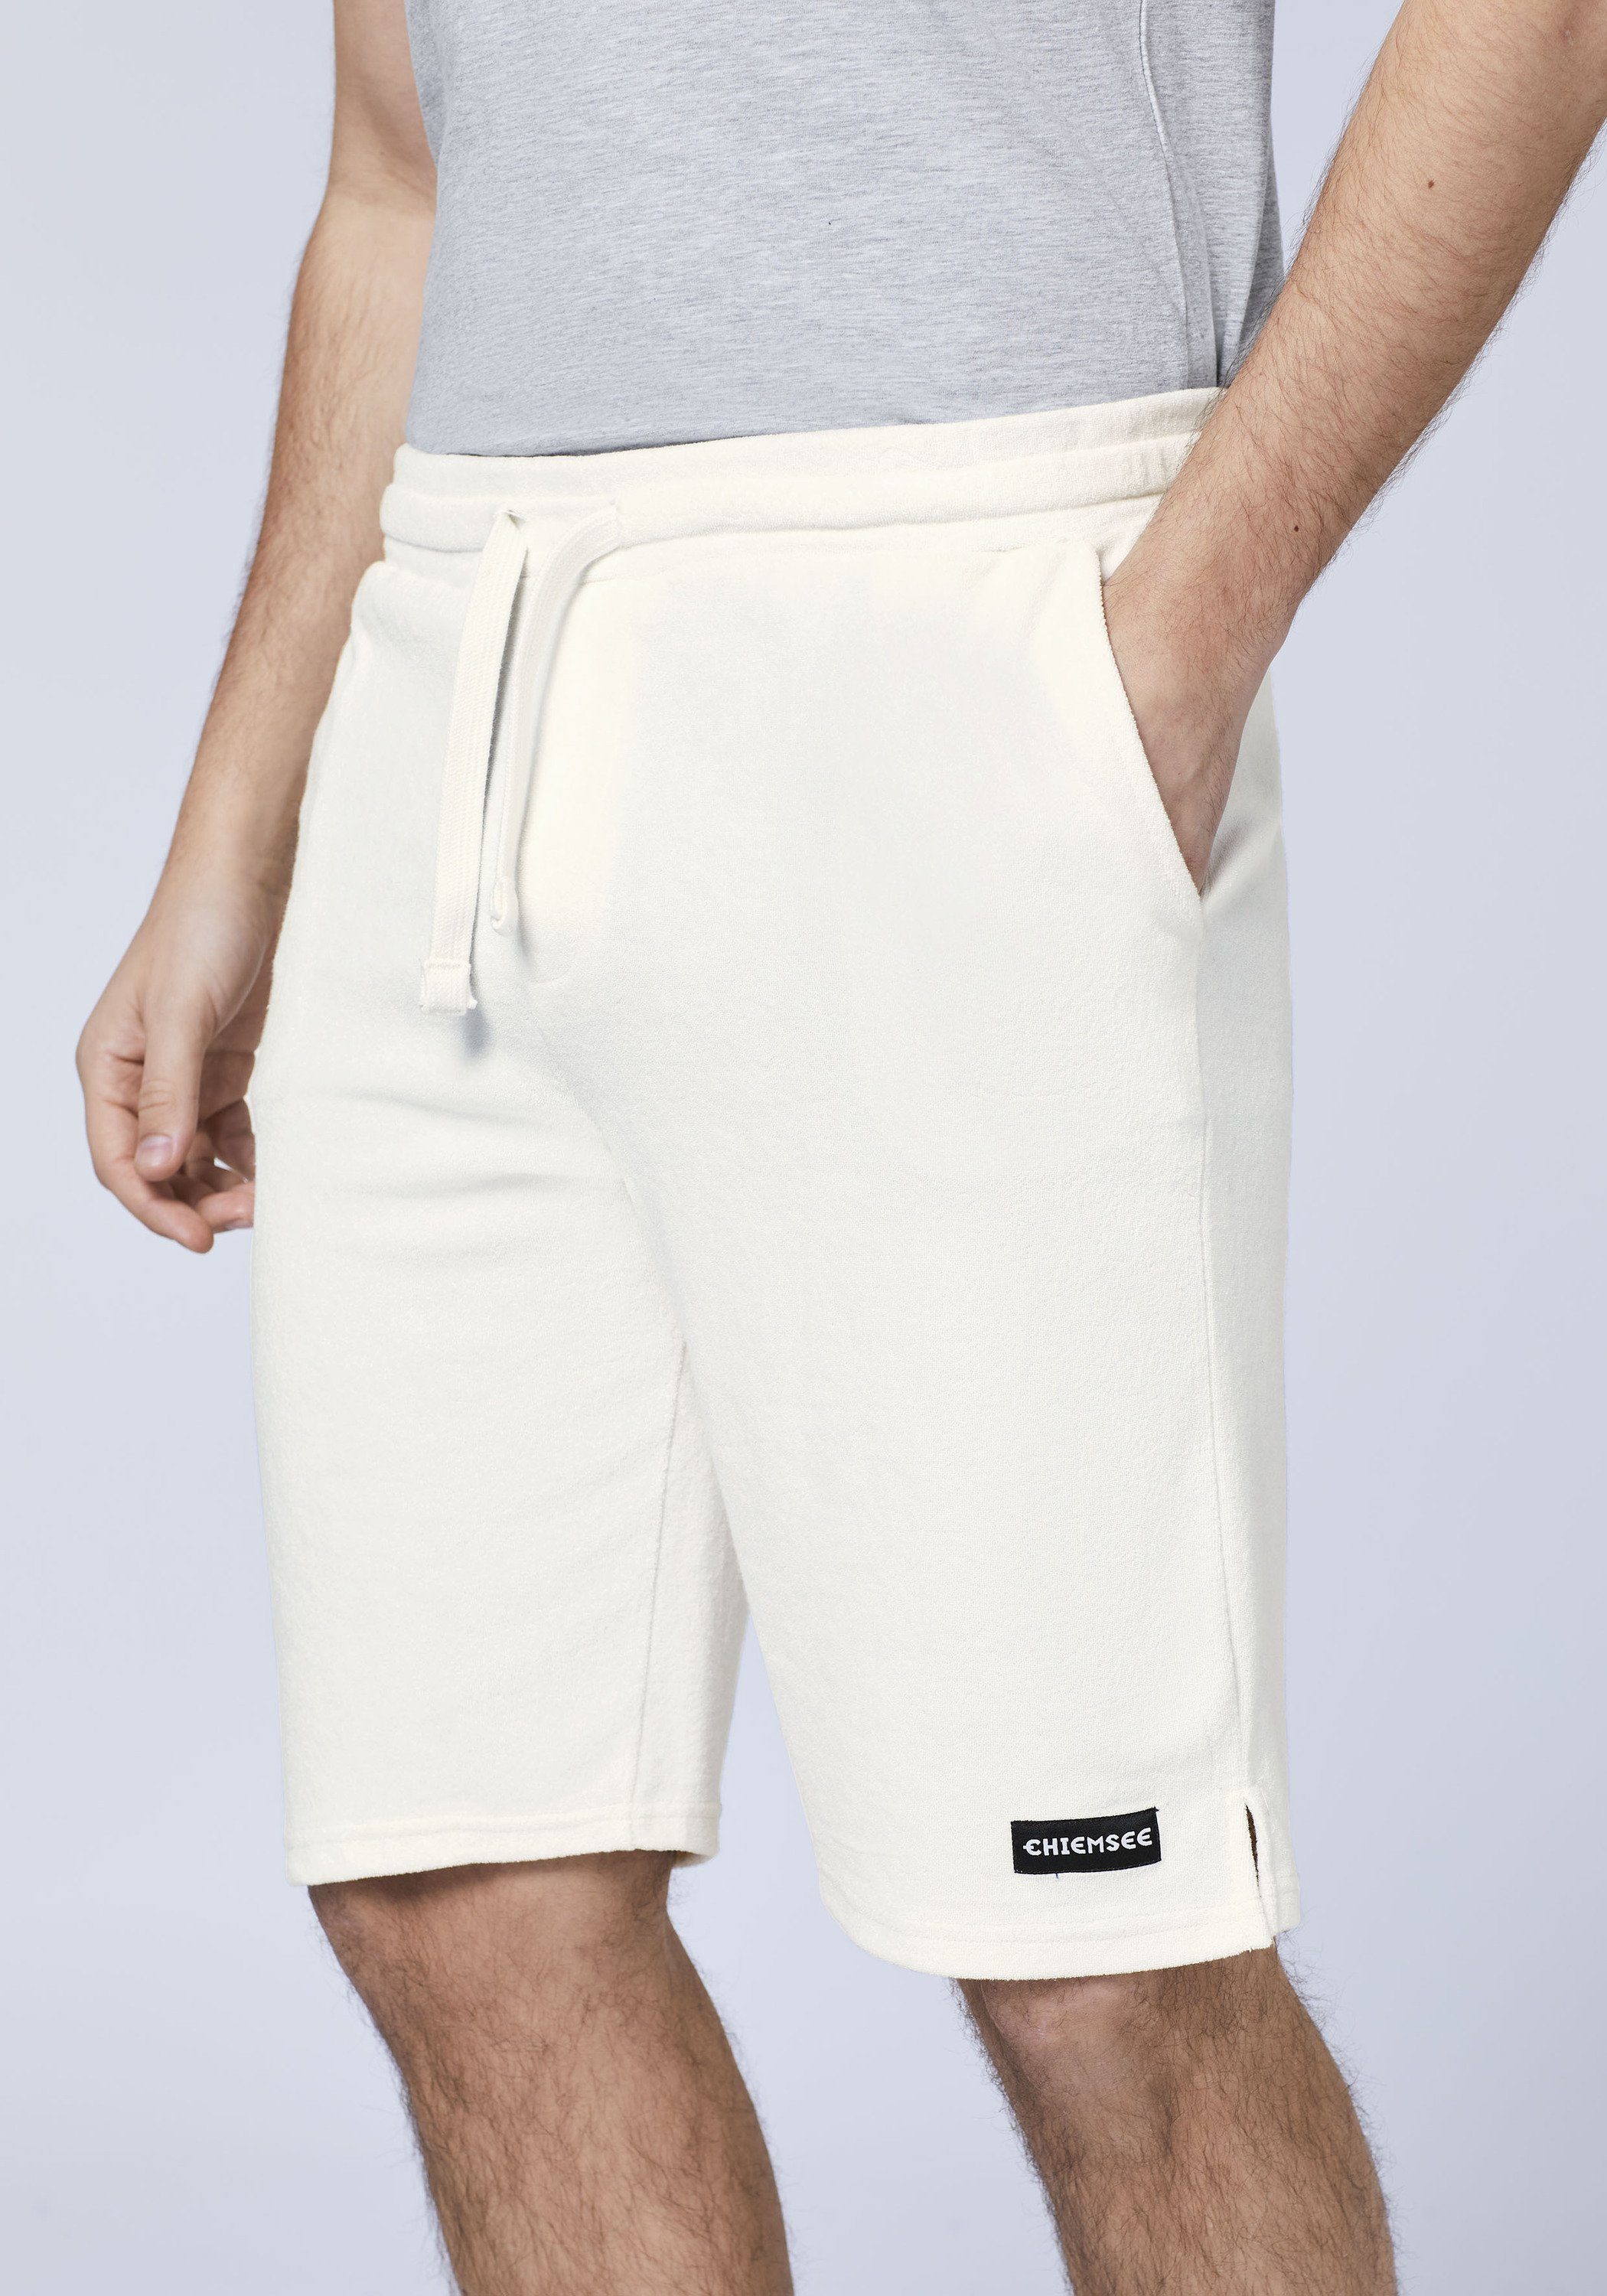 Chiemsee Sweatshorts Baumwollmix Shorts Star 11-4202 White aus 1